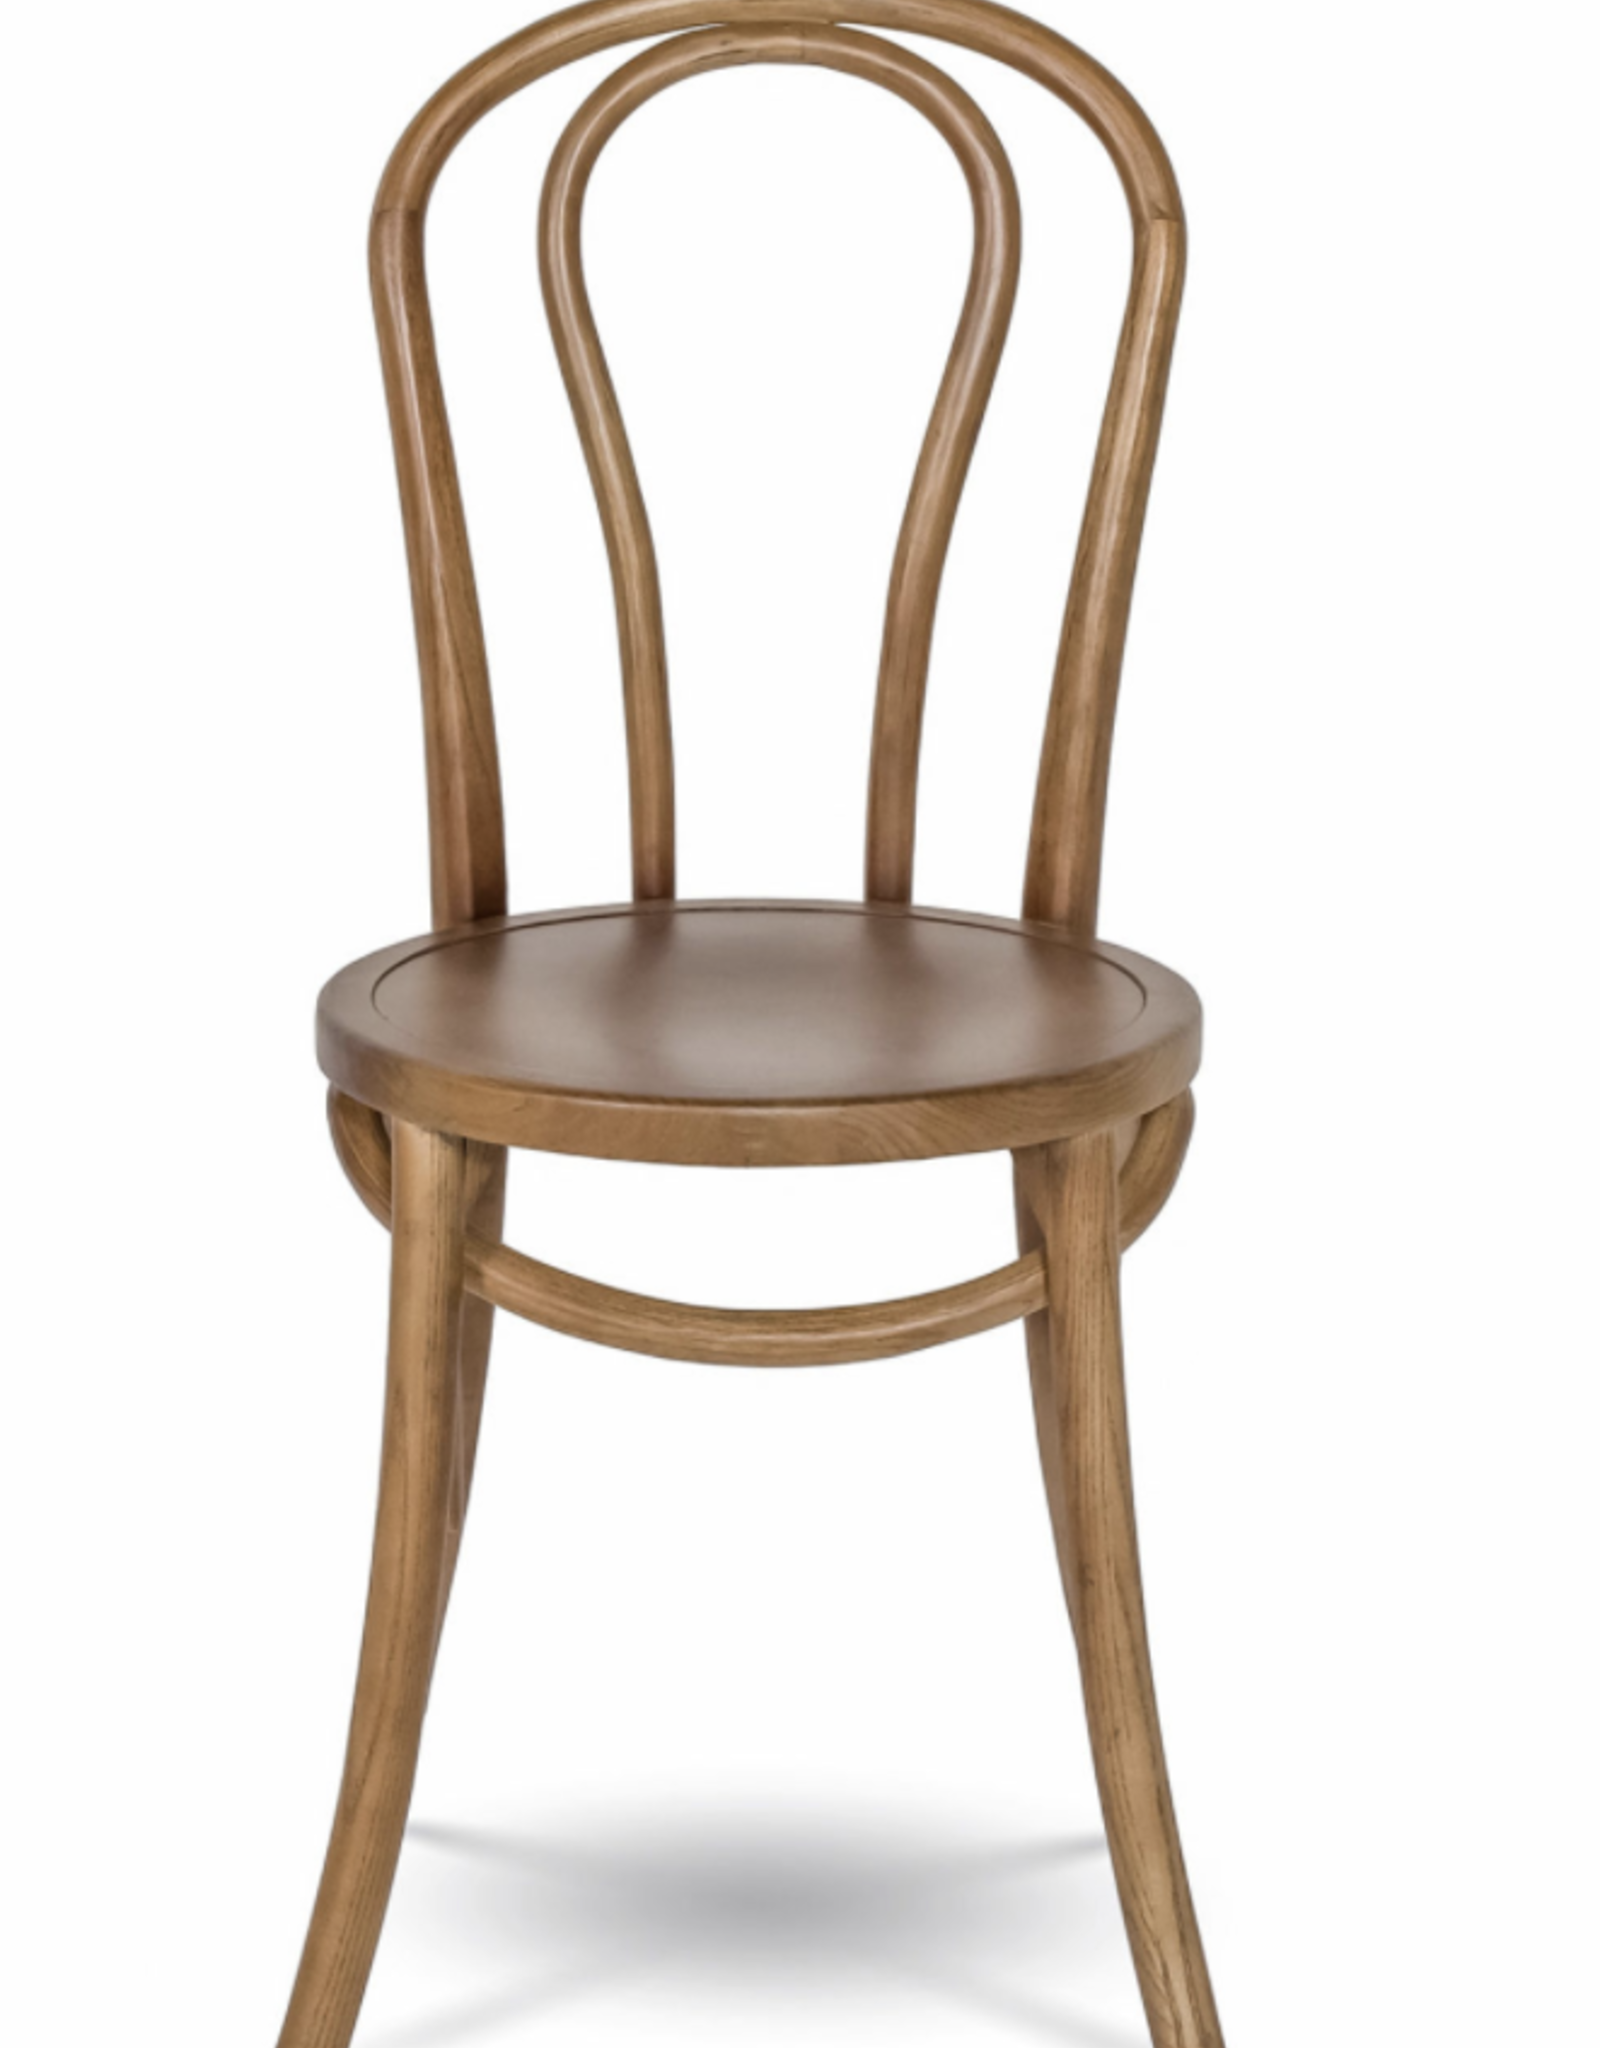 French Bistro Chair – Walnut